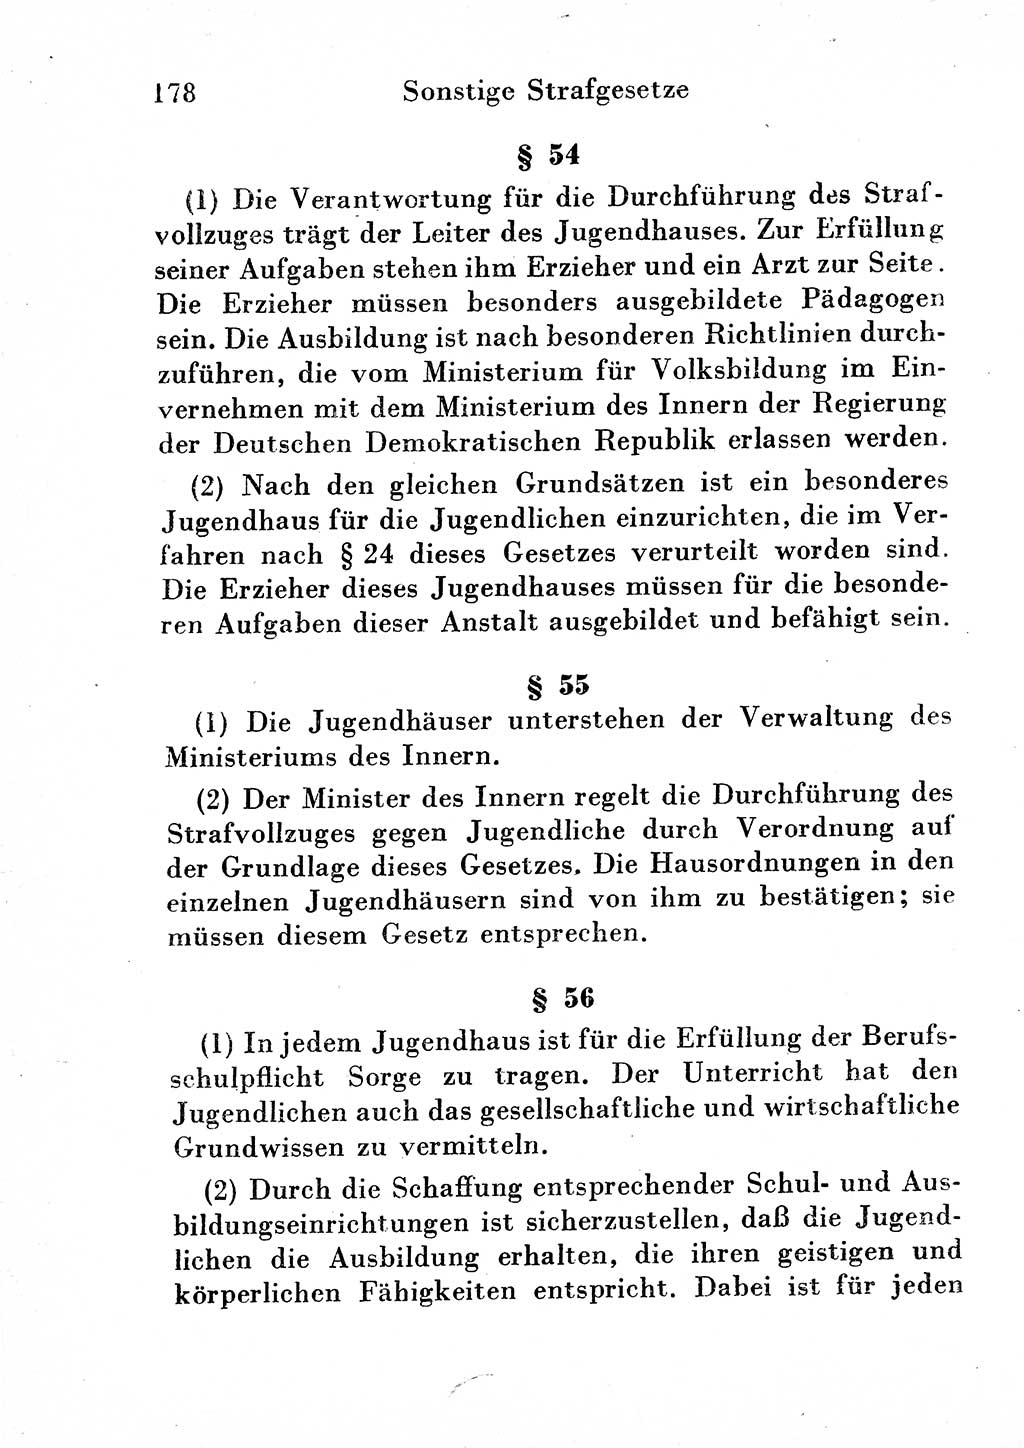 Strafgesetzbuch (StGB) und andere Strafgesetze [Deutsche Demokratische Republik (DDR)] 1954, Seite 178 (StGB Strafges. DDR 1954, S. 178)